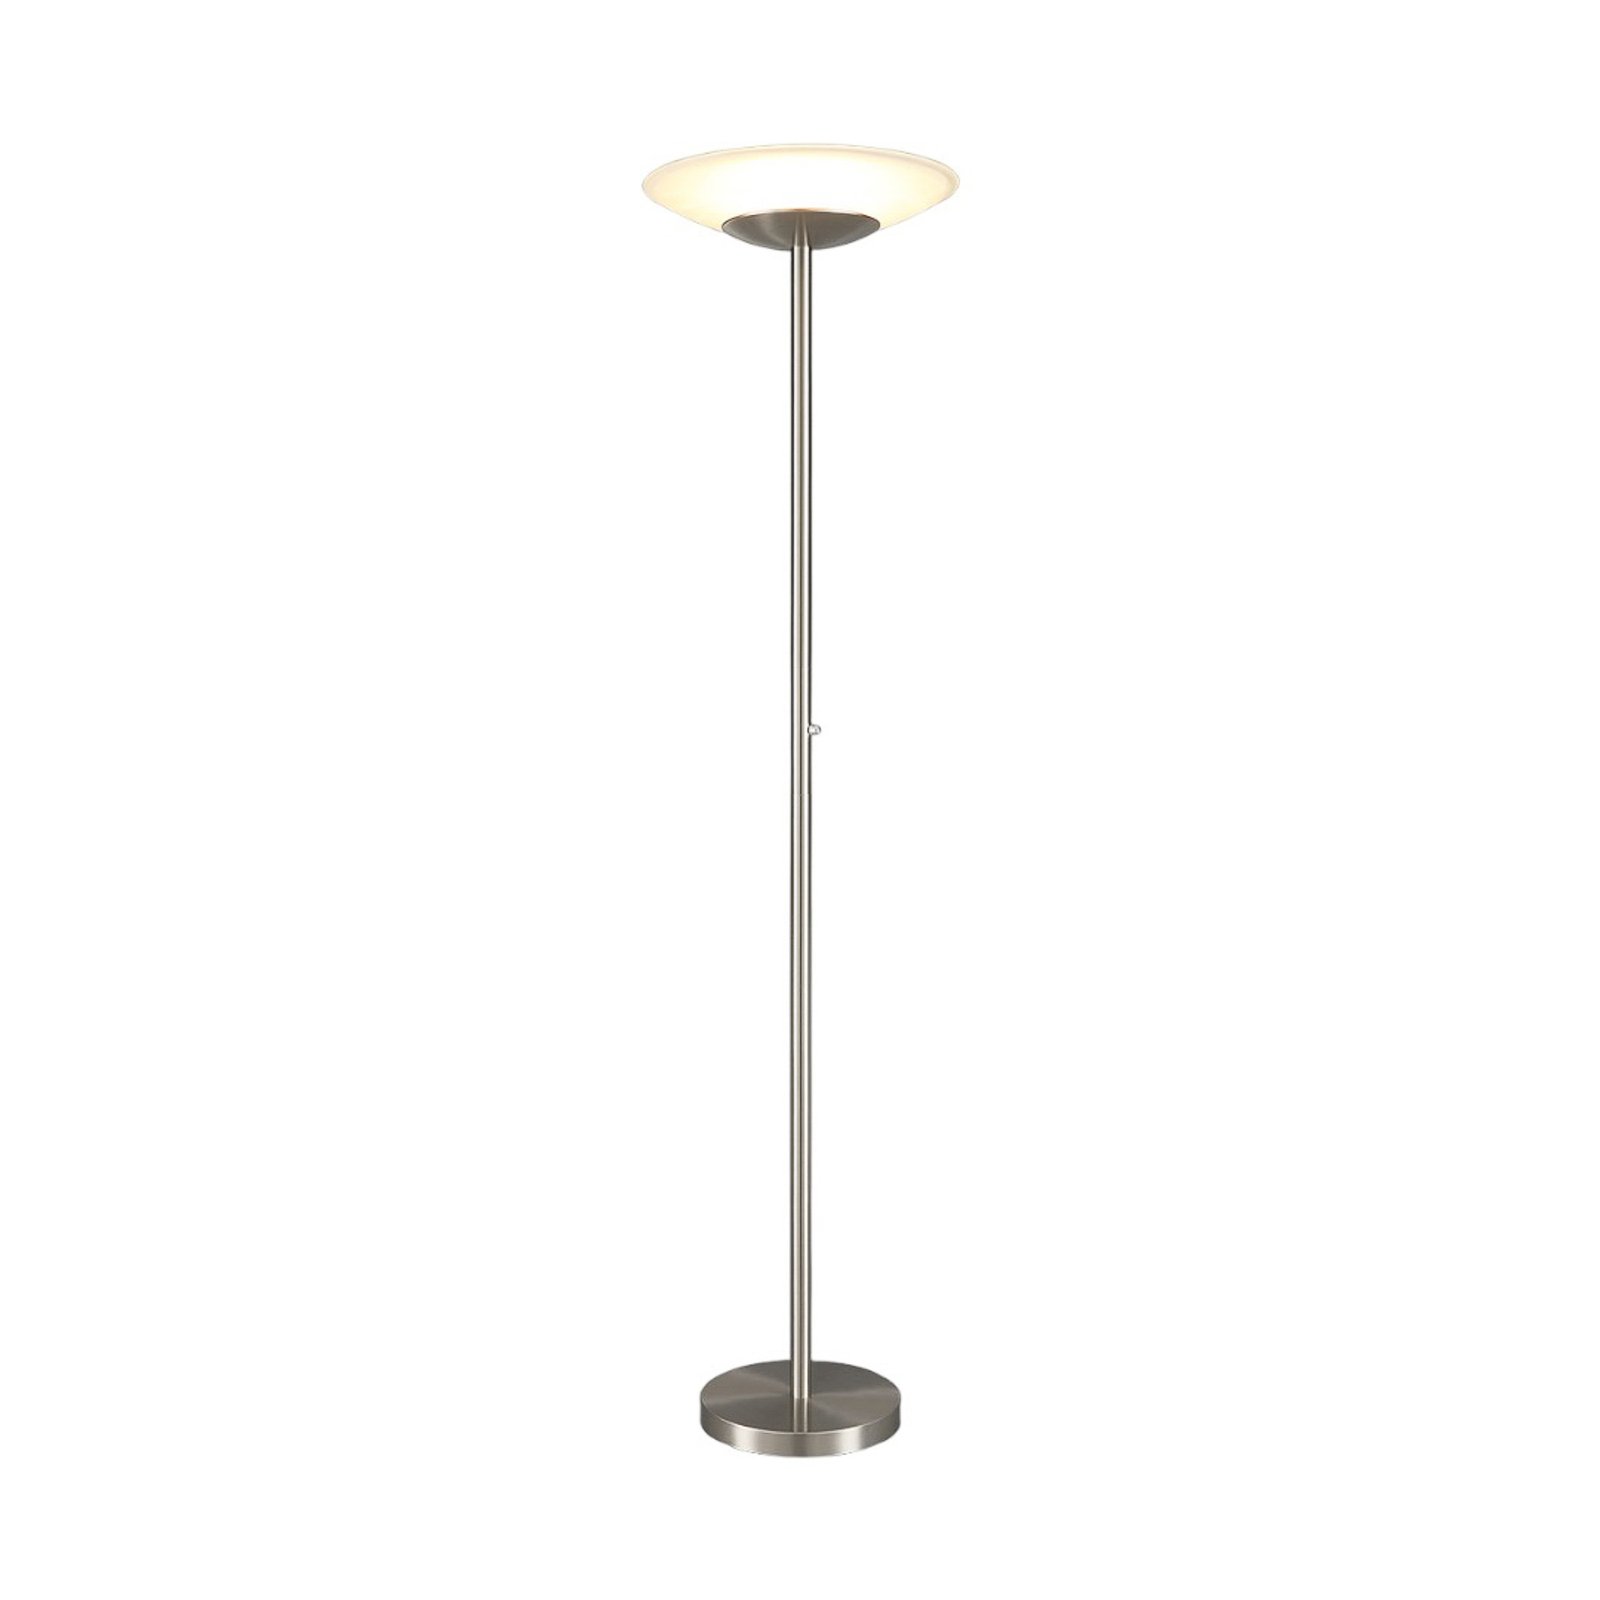 LED uplighter floor lamp Ragna with a dimmer, matt nickel